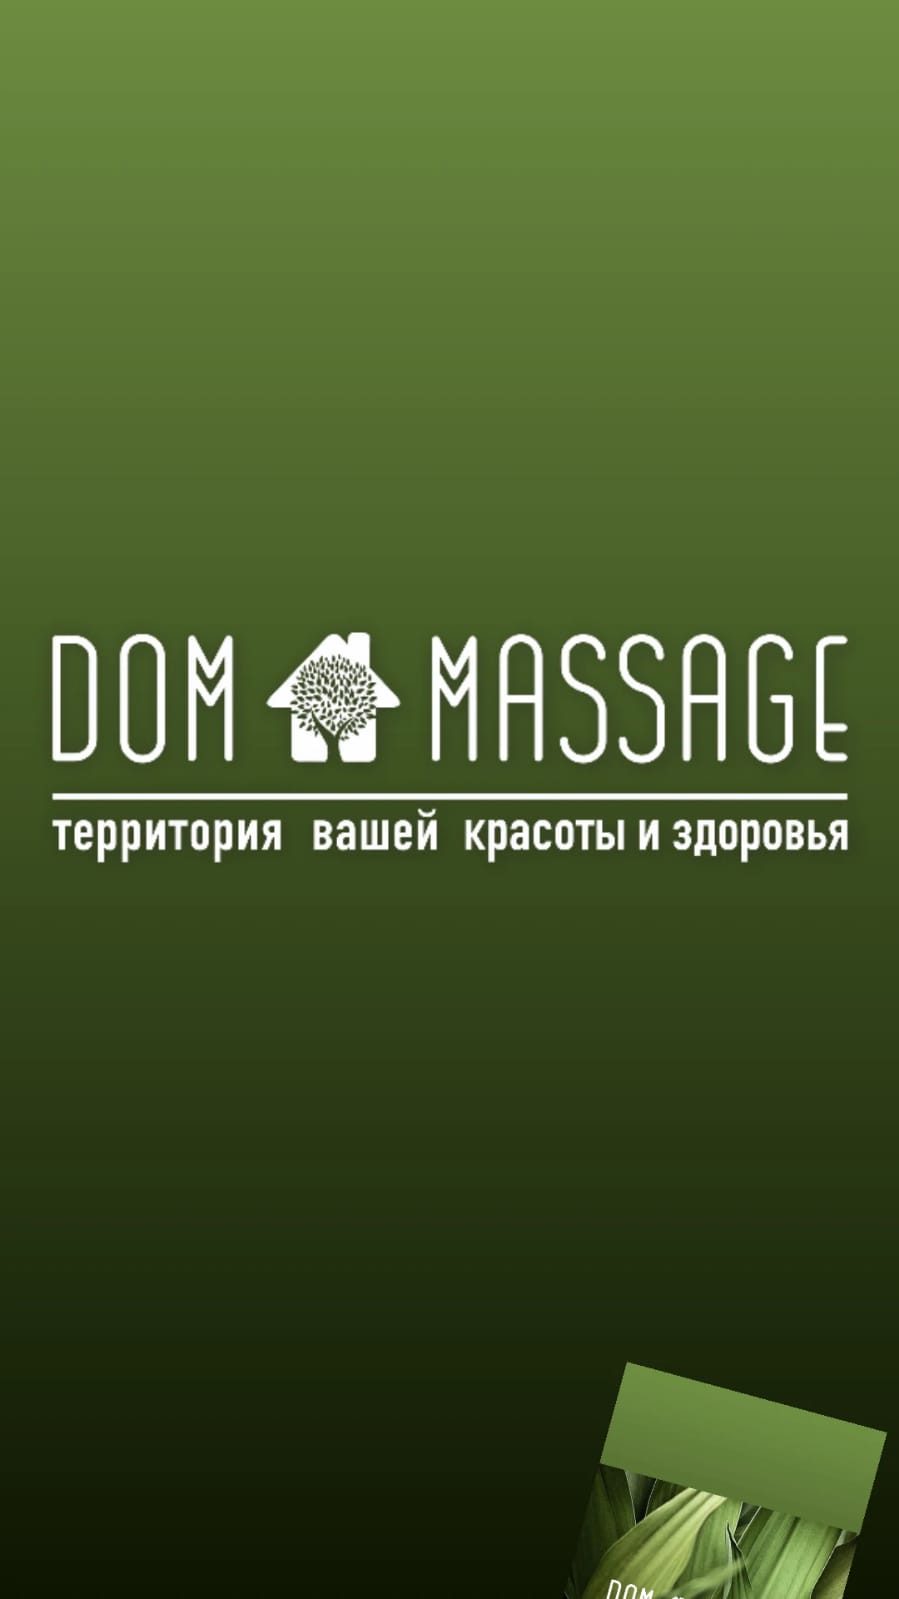 Ru Massage Com